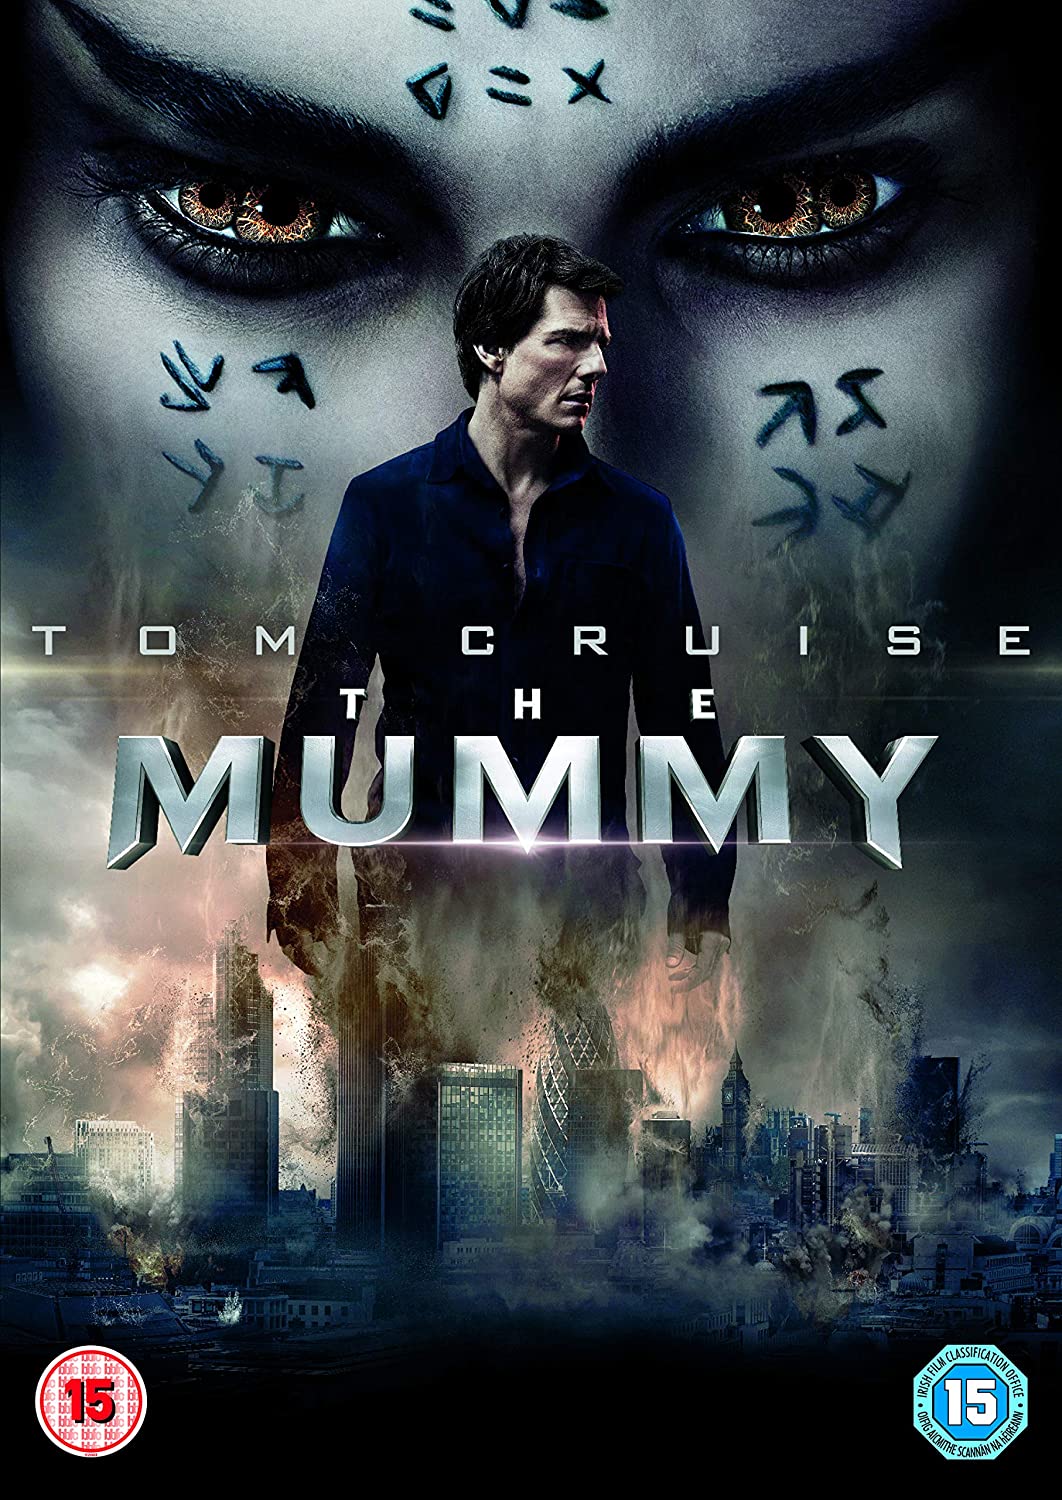 La mummia (2017) [DVD]